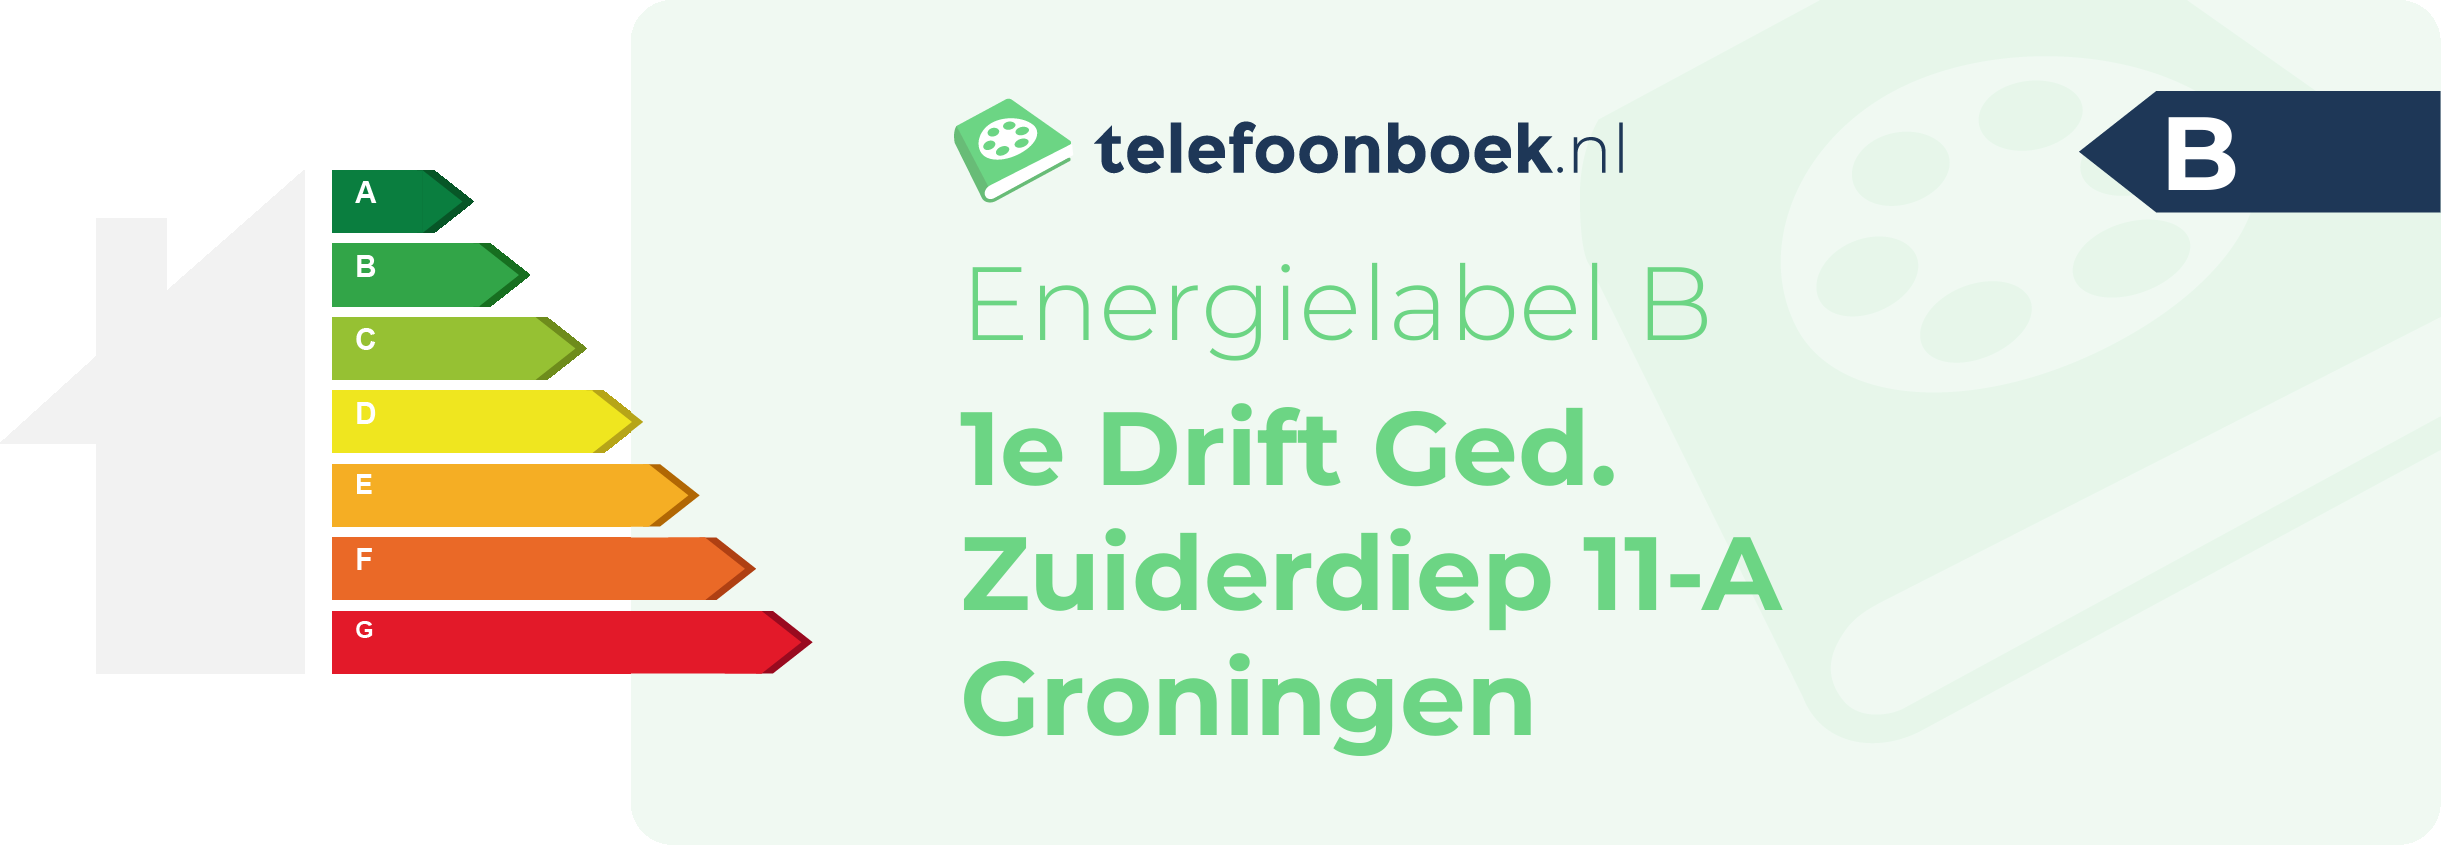 Energielabel 1e Drift Ged. Zuiderdiep 11-A Groningen